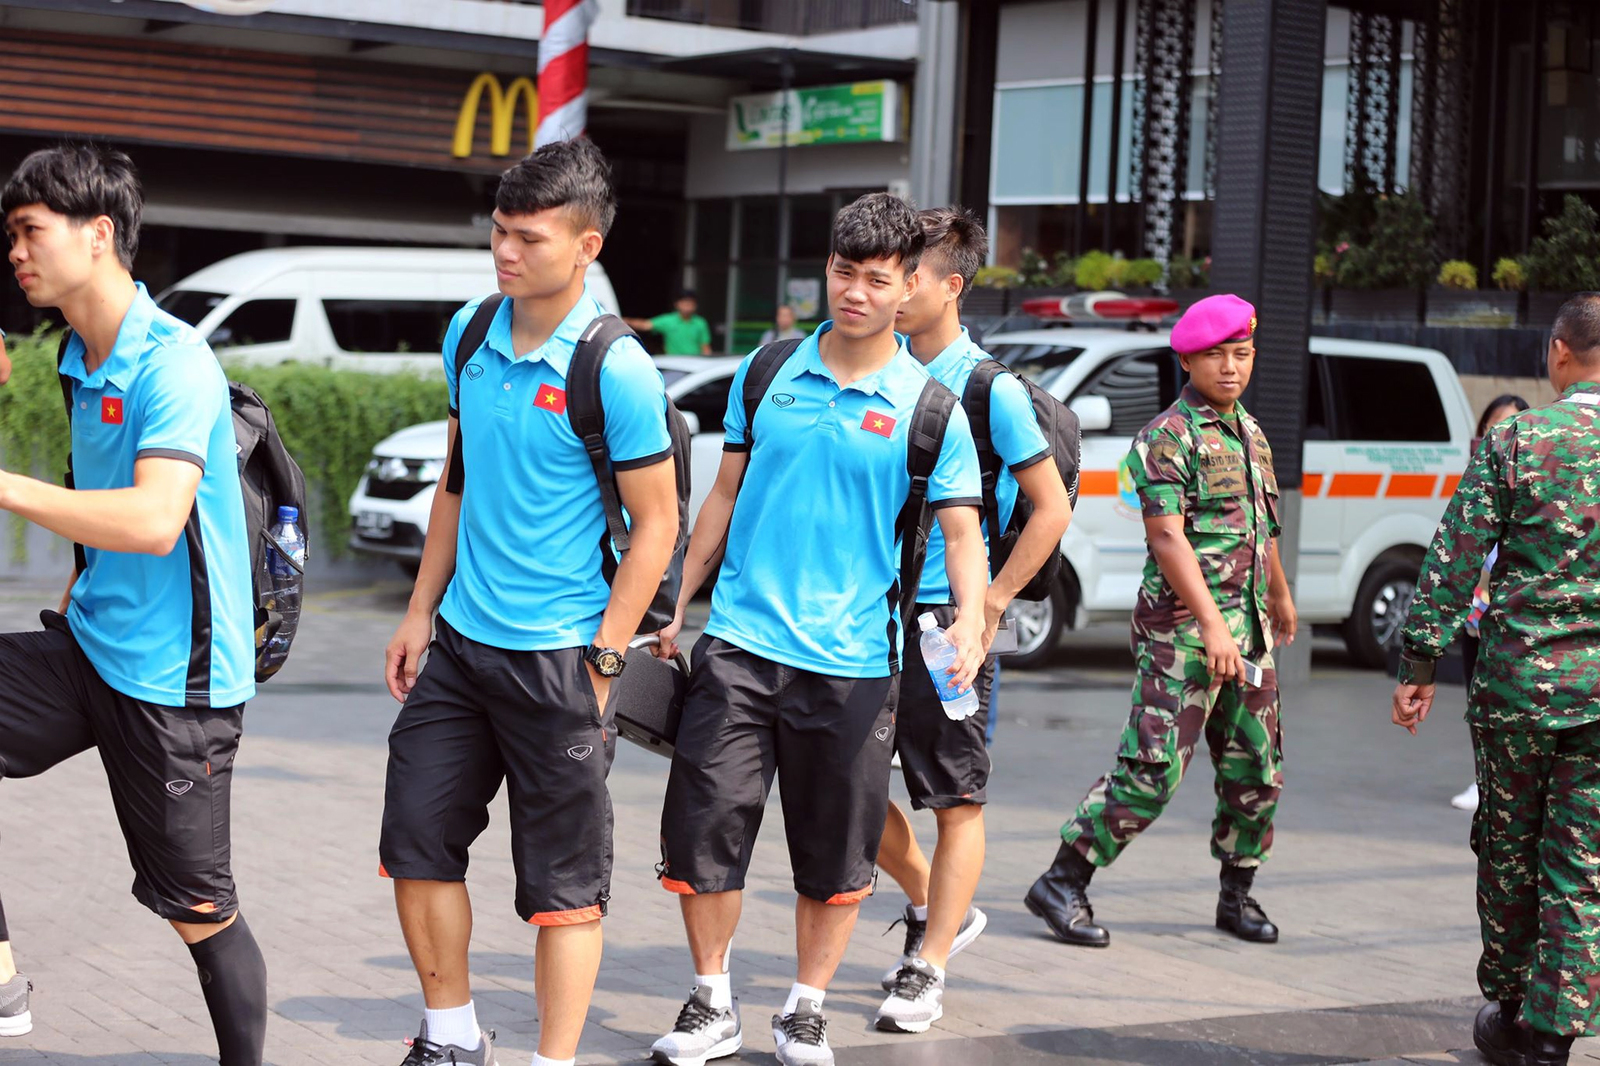 Các cầu thủ xếp hàng lên xe buýt, chuẩn bị di chuyển. U23 Việt Nam sẽ đóng quân tiếp theo ở Cibibong, Bogor cho đến hết giải. Cả 4 trận cuối cùng của môn bóng đá nam đều diễn ra trên sân Pakansari, Cibinong.